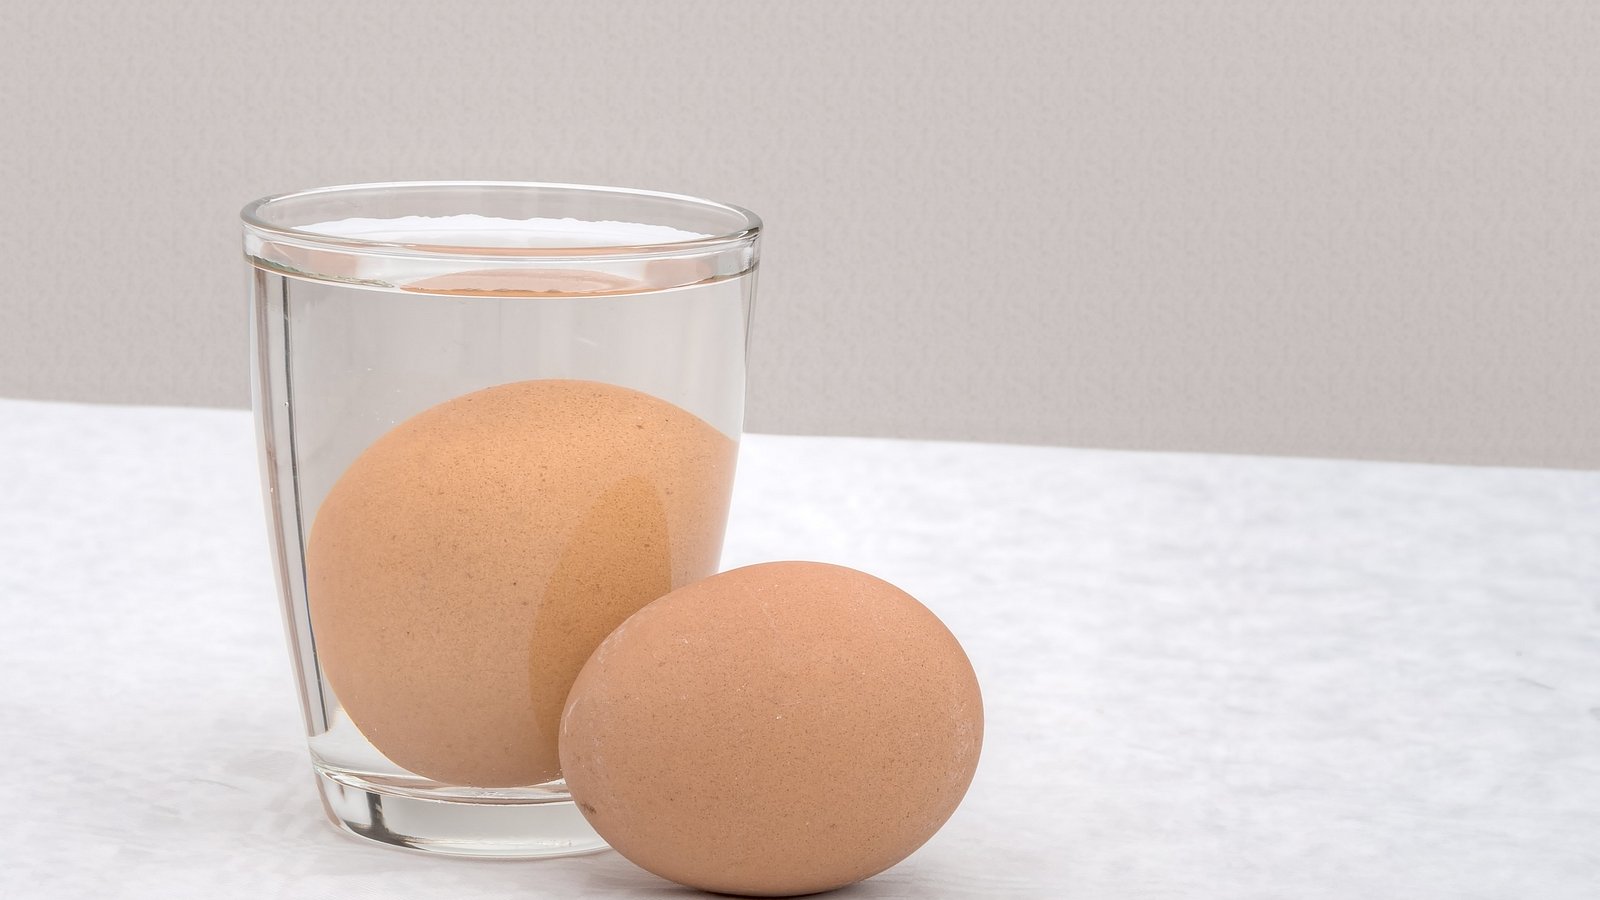 Ein braunes Ei liegt neben einem Glas, in dem ein weiteres braunes Ei in Wasser liegt.